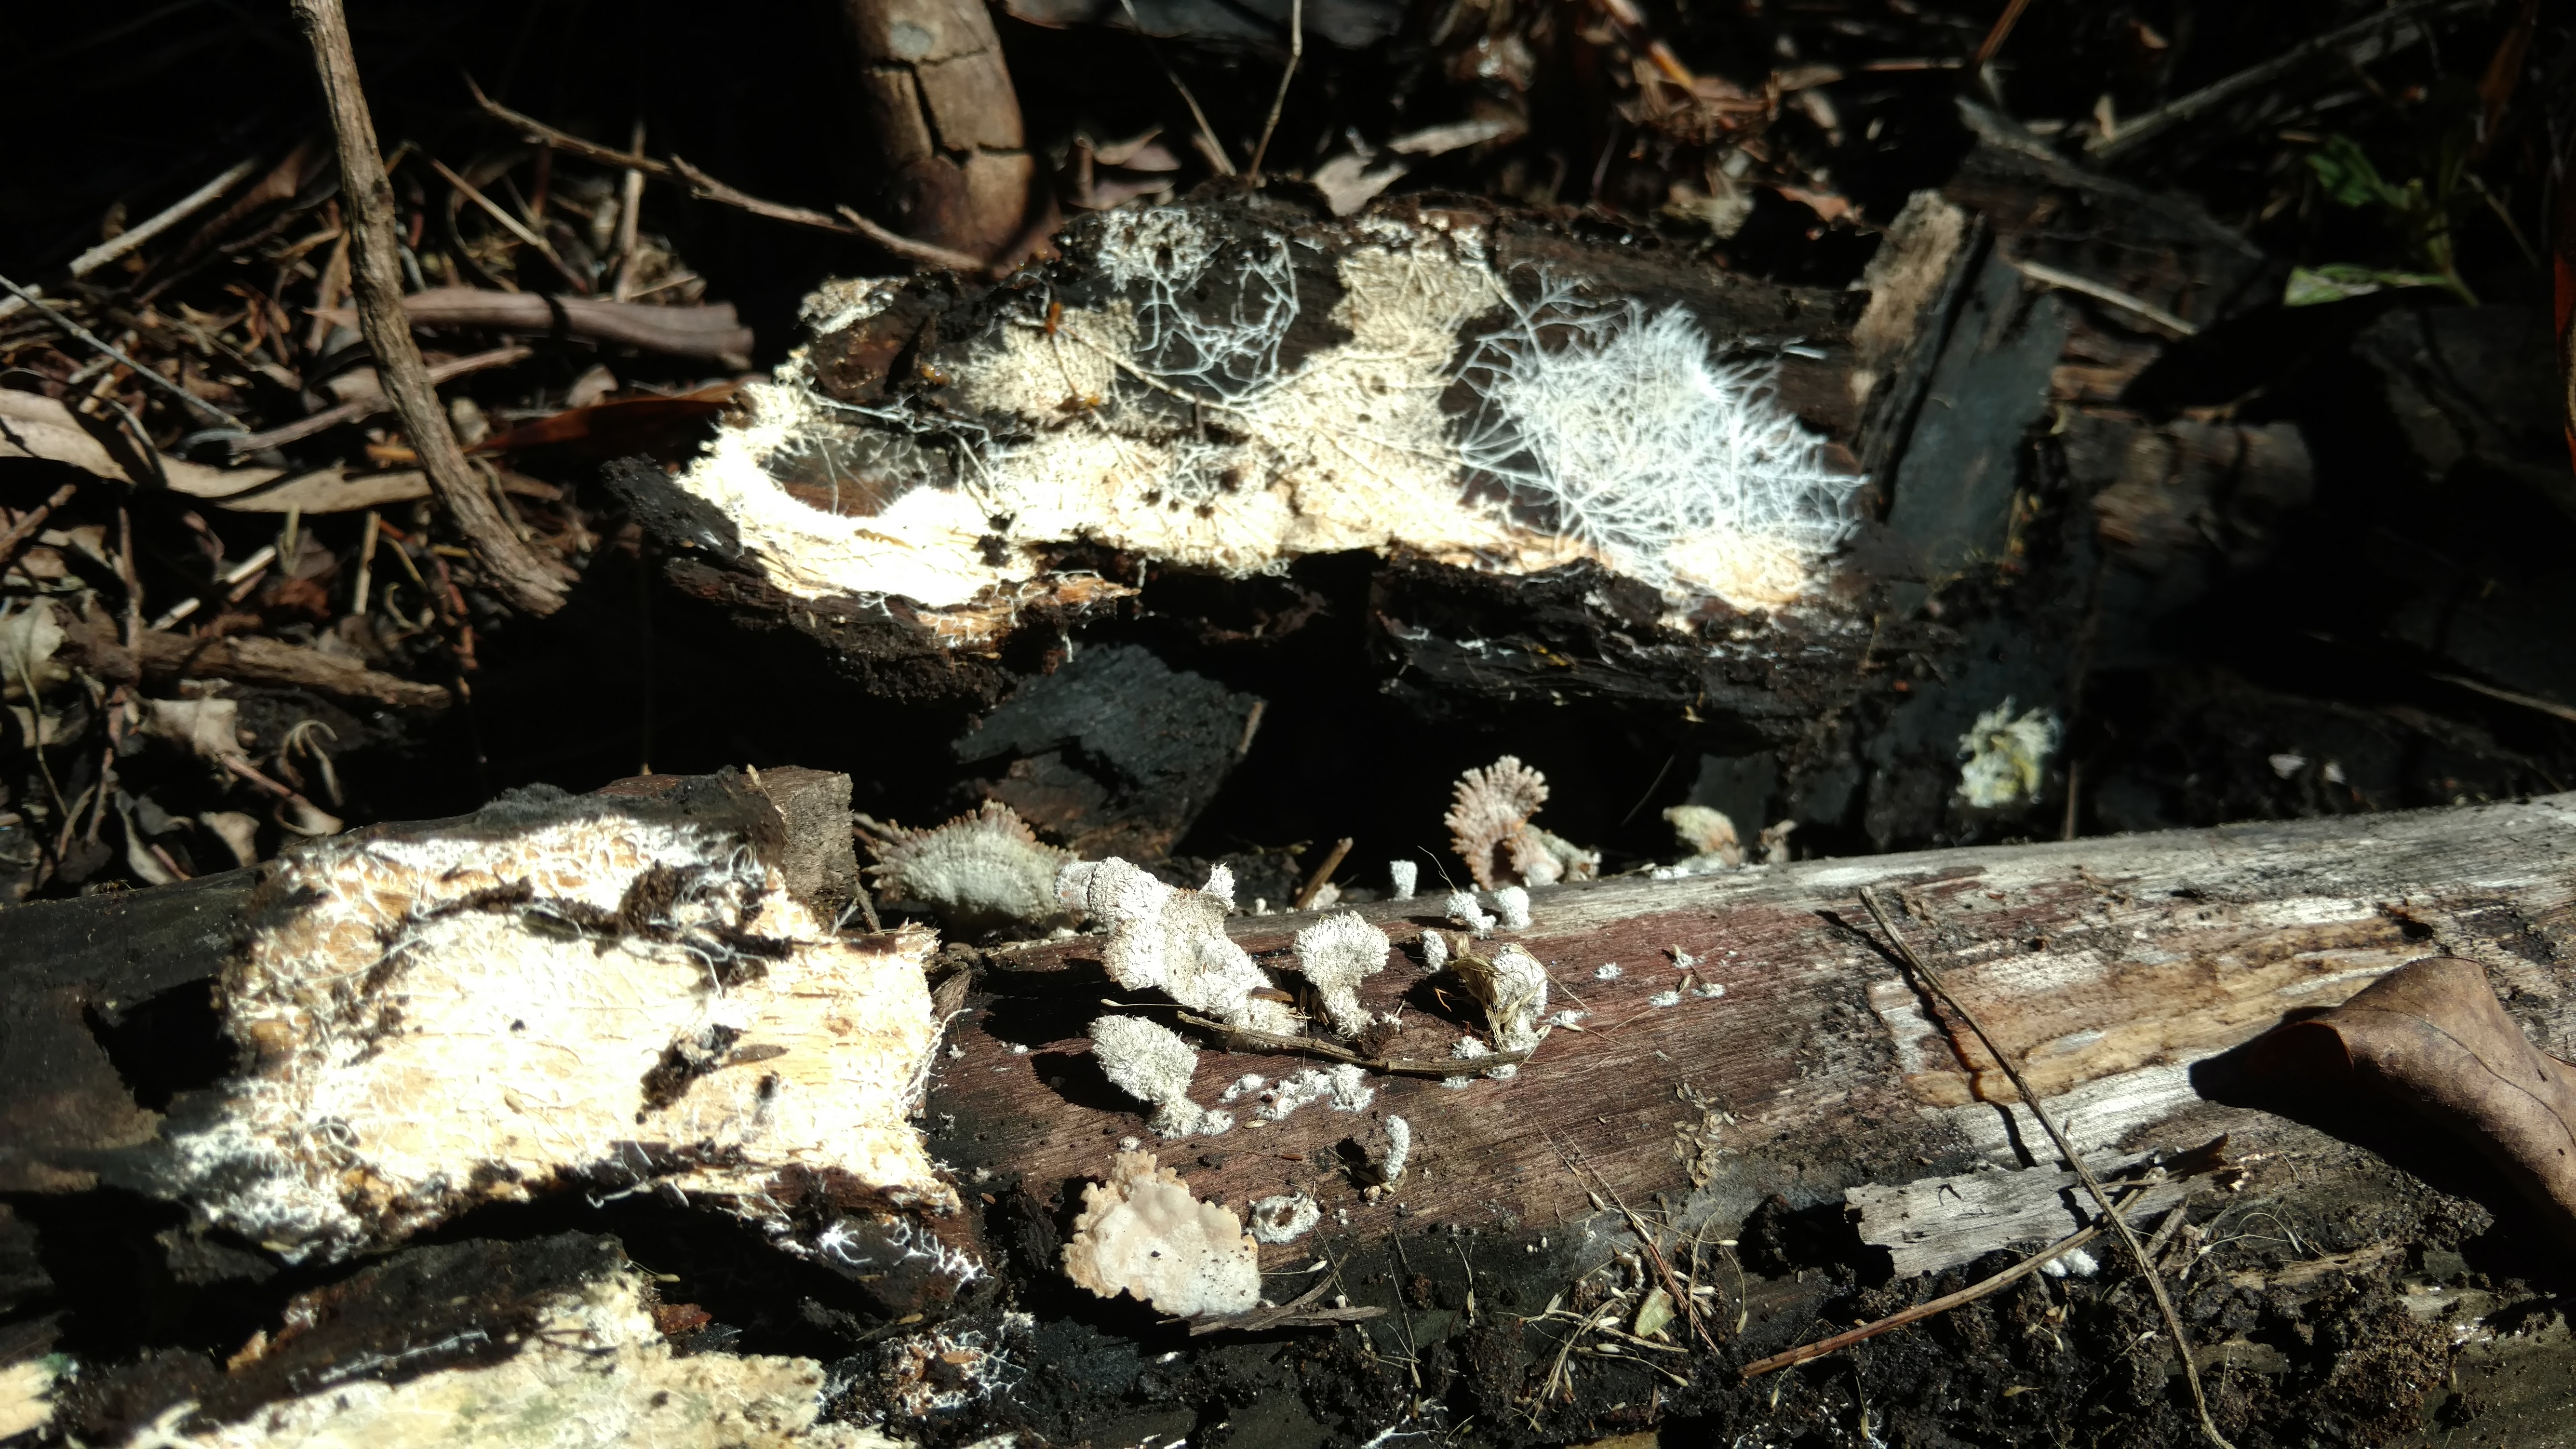 20171111 Grupo de estudos de cogumelos UFSC Urupê Micológicos Trilha Lagoa do Peri - Schisofilus comunis, foto com os rizomiceli